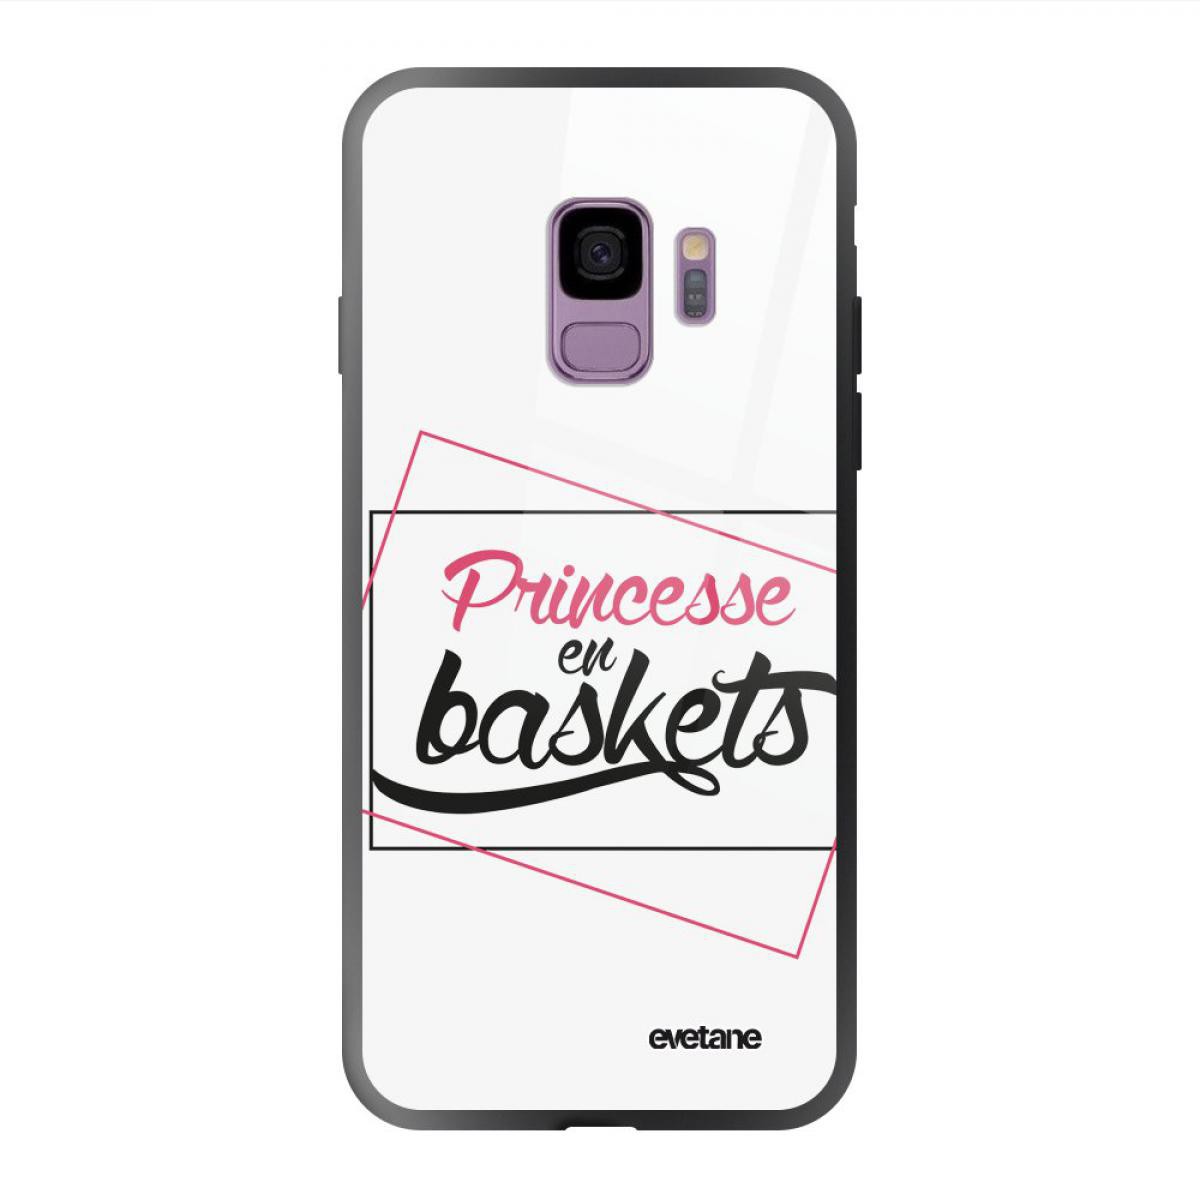 Evetane - Coque Galaxy S9 soft touch noir effet glossy Princesse En Baskets Design Evetane - Coque, étui smartphone